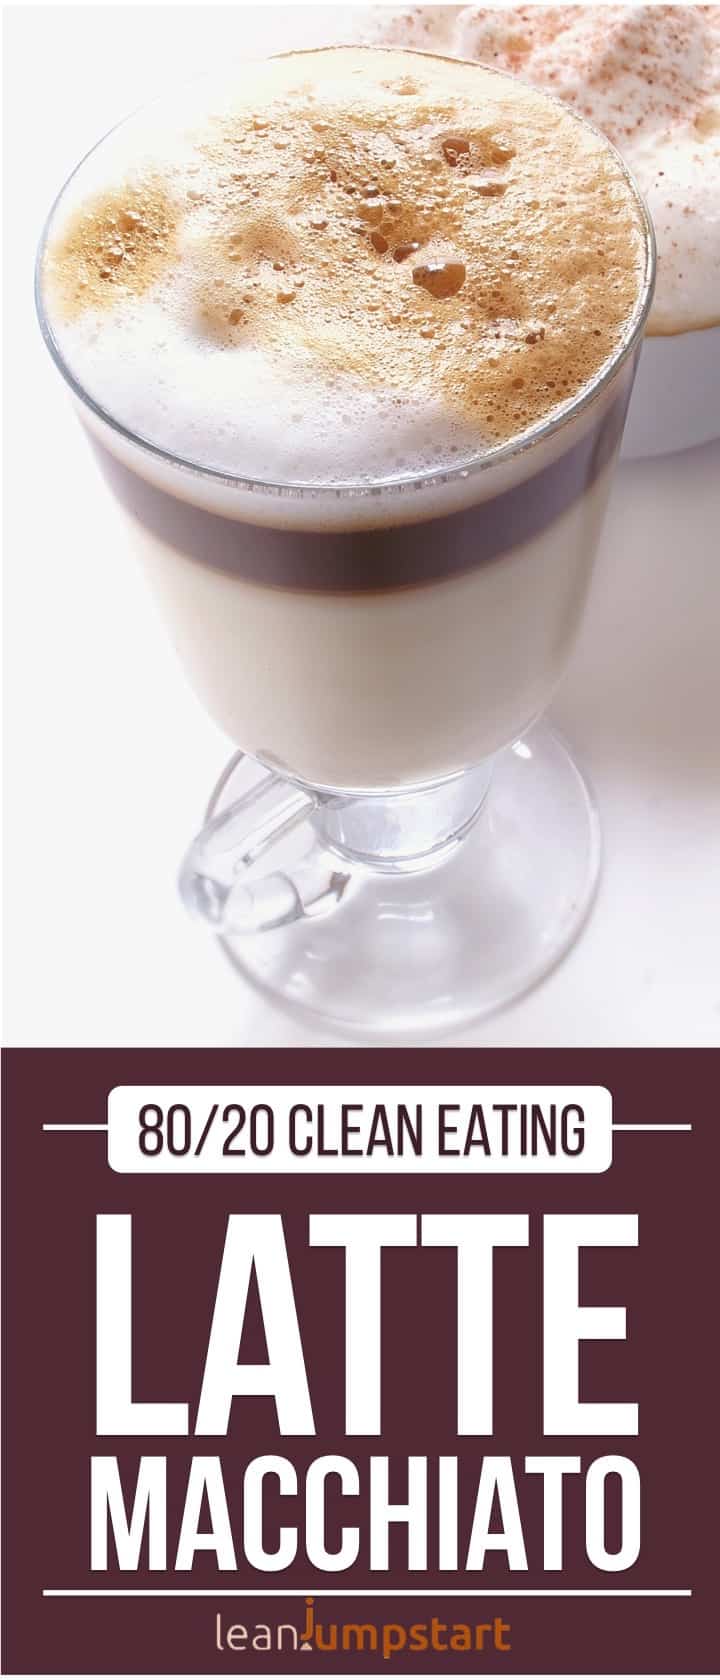 latte macchiato coffee snack